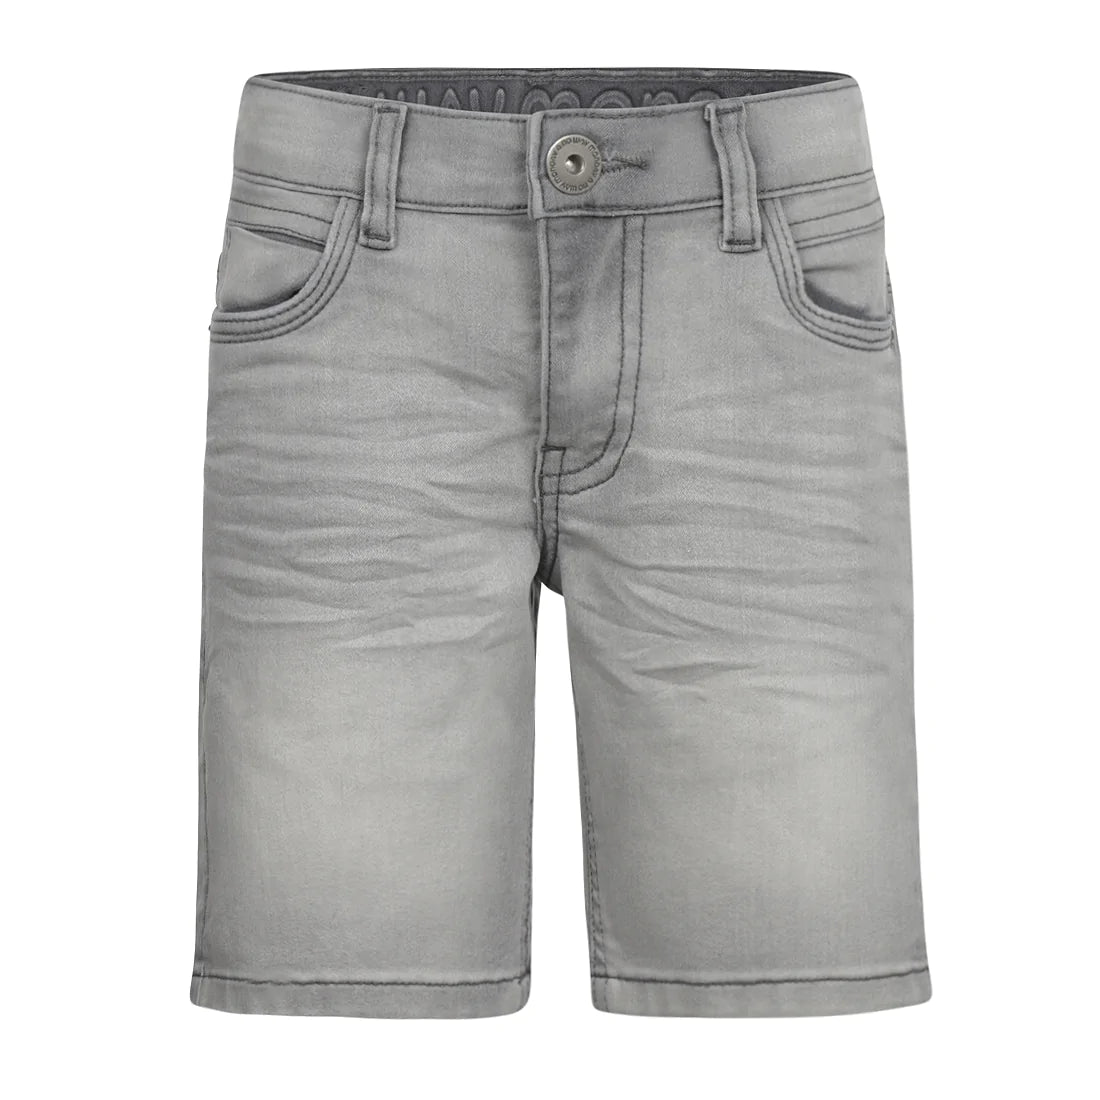 Jongens Jeans shorts Slim van  in de kleur Grey jeans in maat 164.